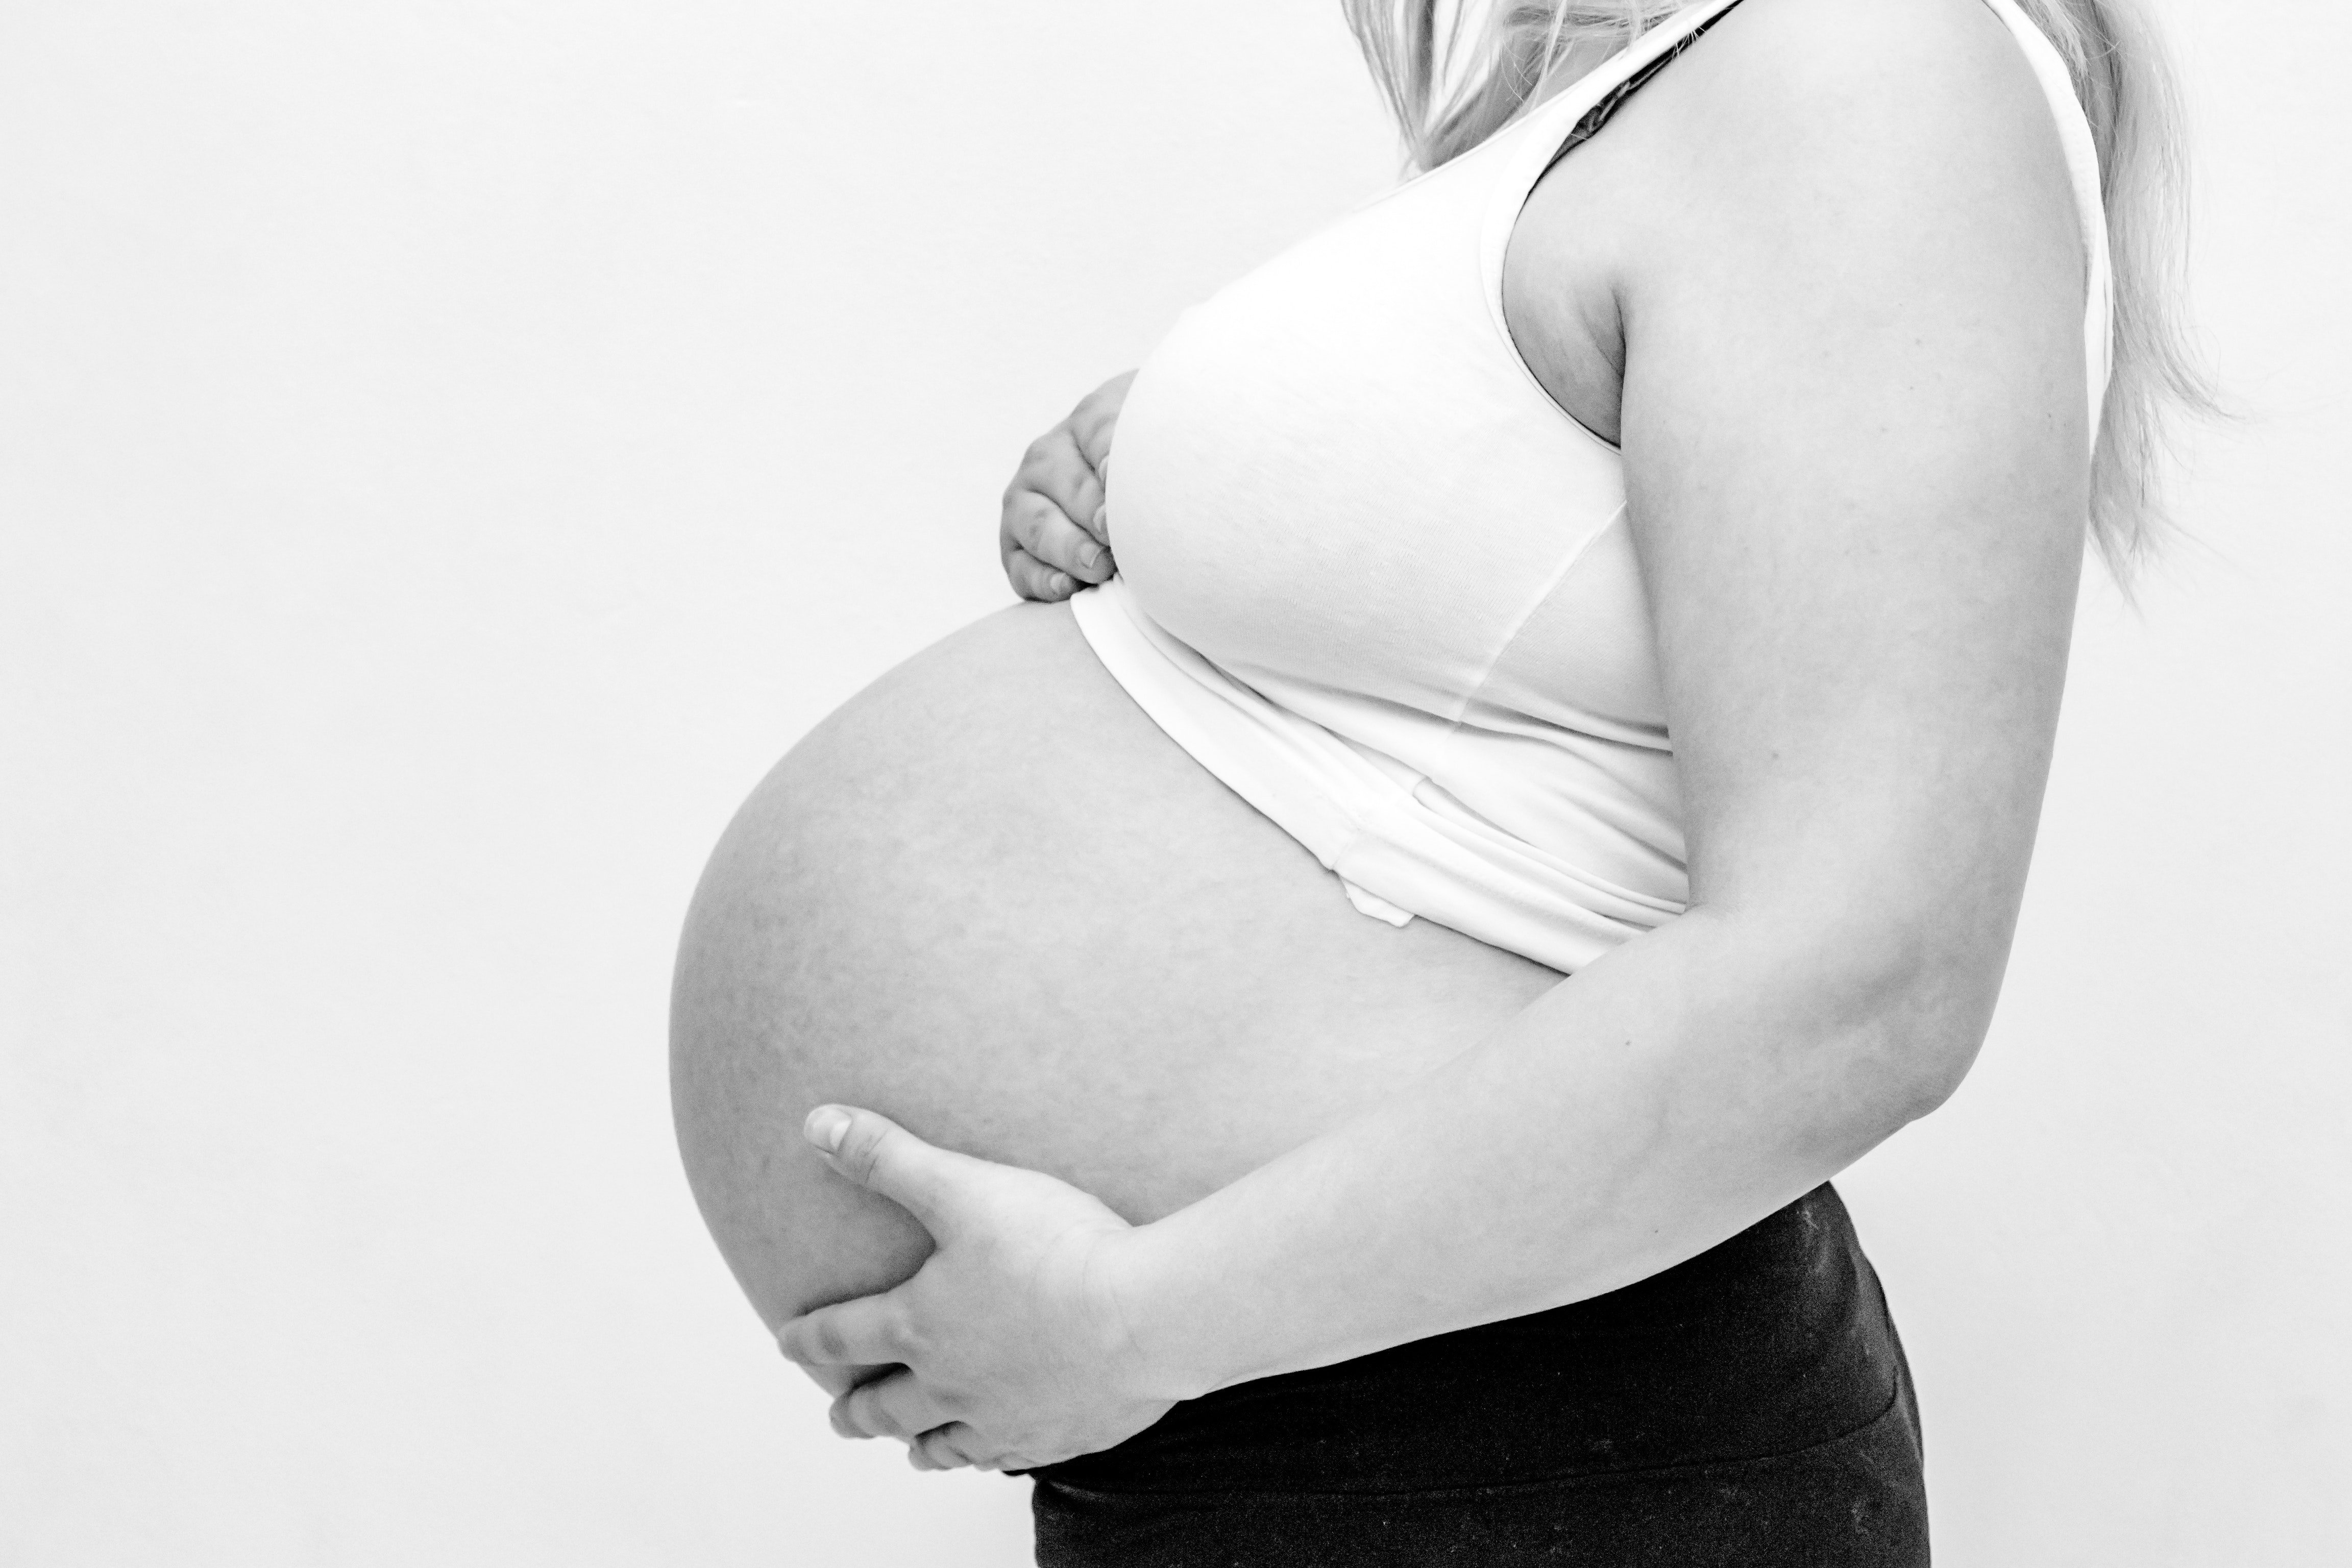 Pierderea în greutate în timpul sarcinii: în trimestrul 1, 2 și 3 - Tratament 